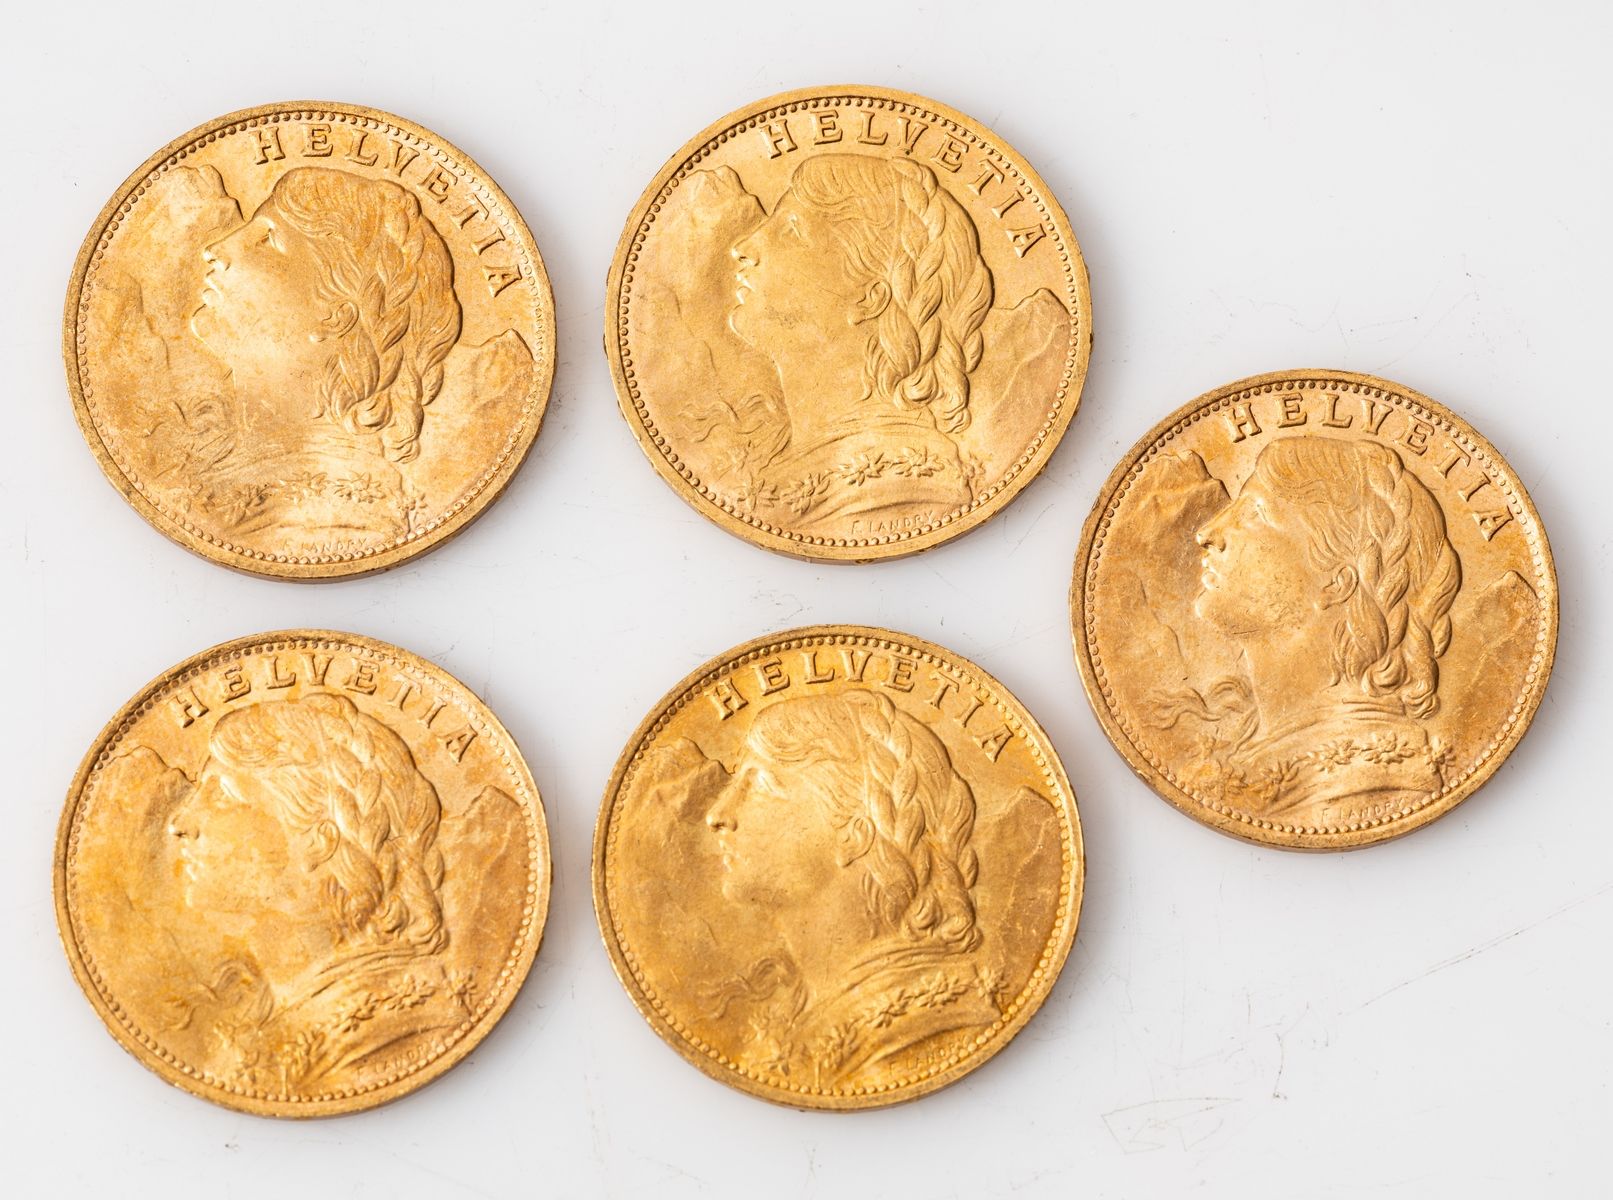 Null Cinque monete d'oro da 20 franchi Helvetia (5 x 1935). 

Peso: 32,2 g.